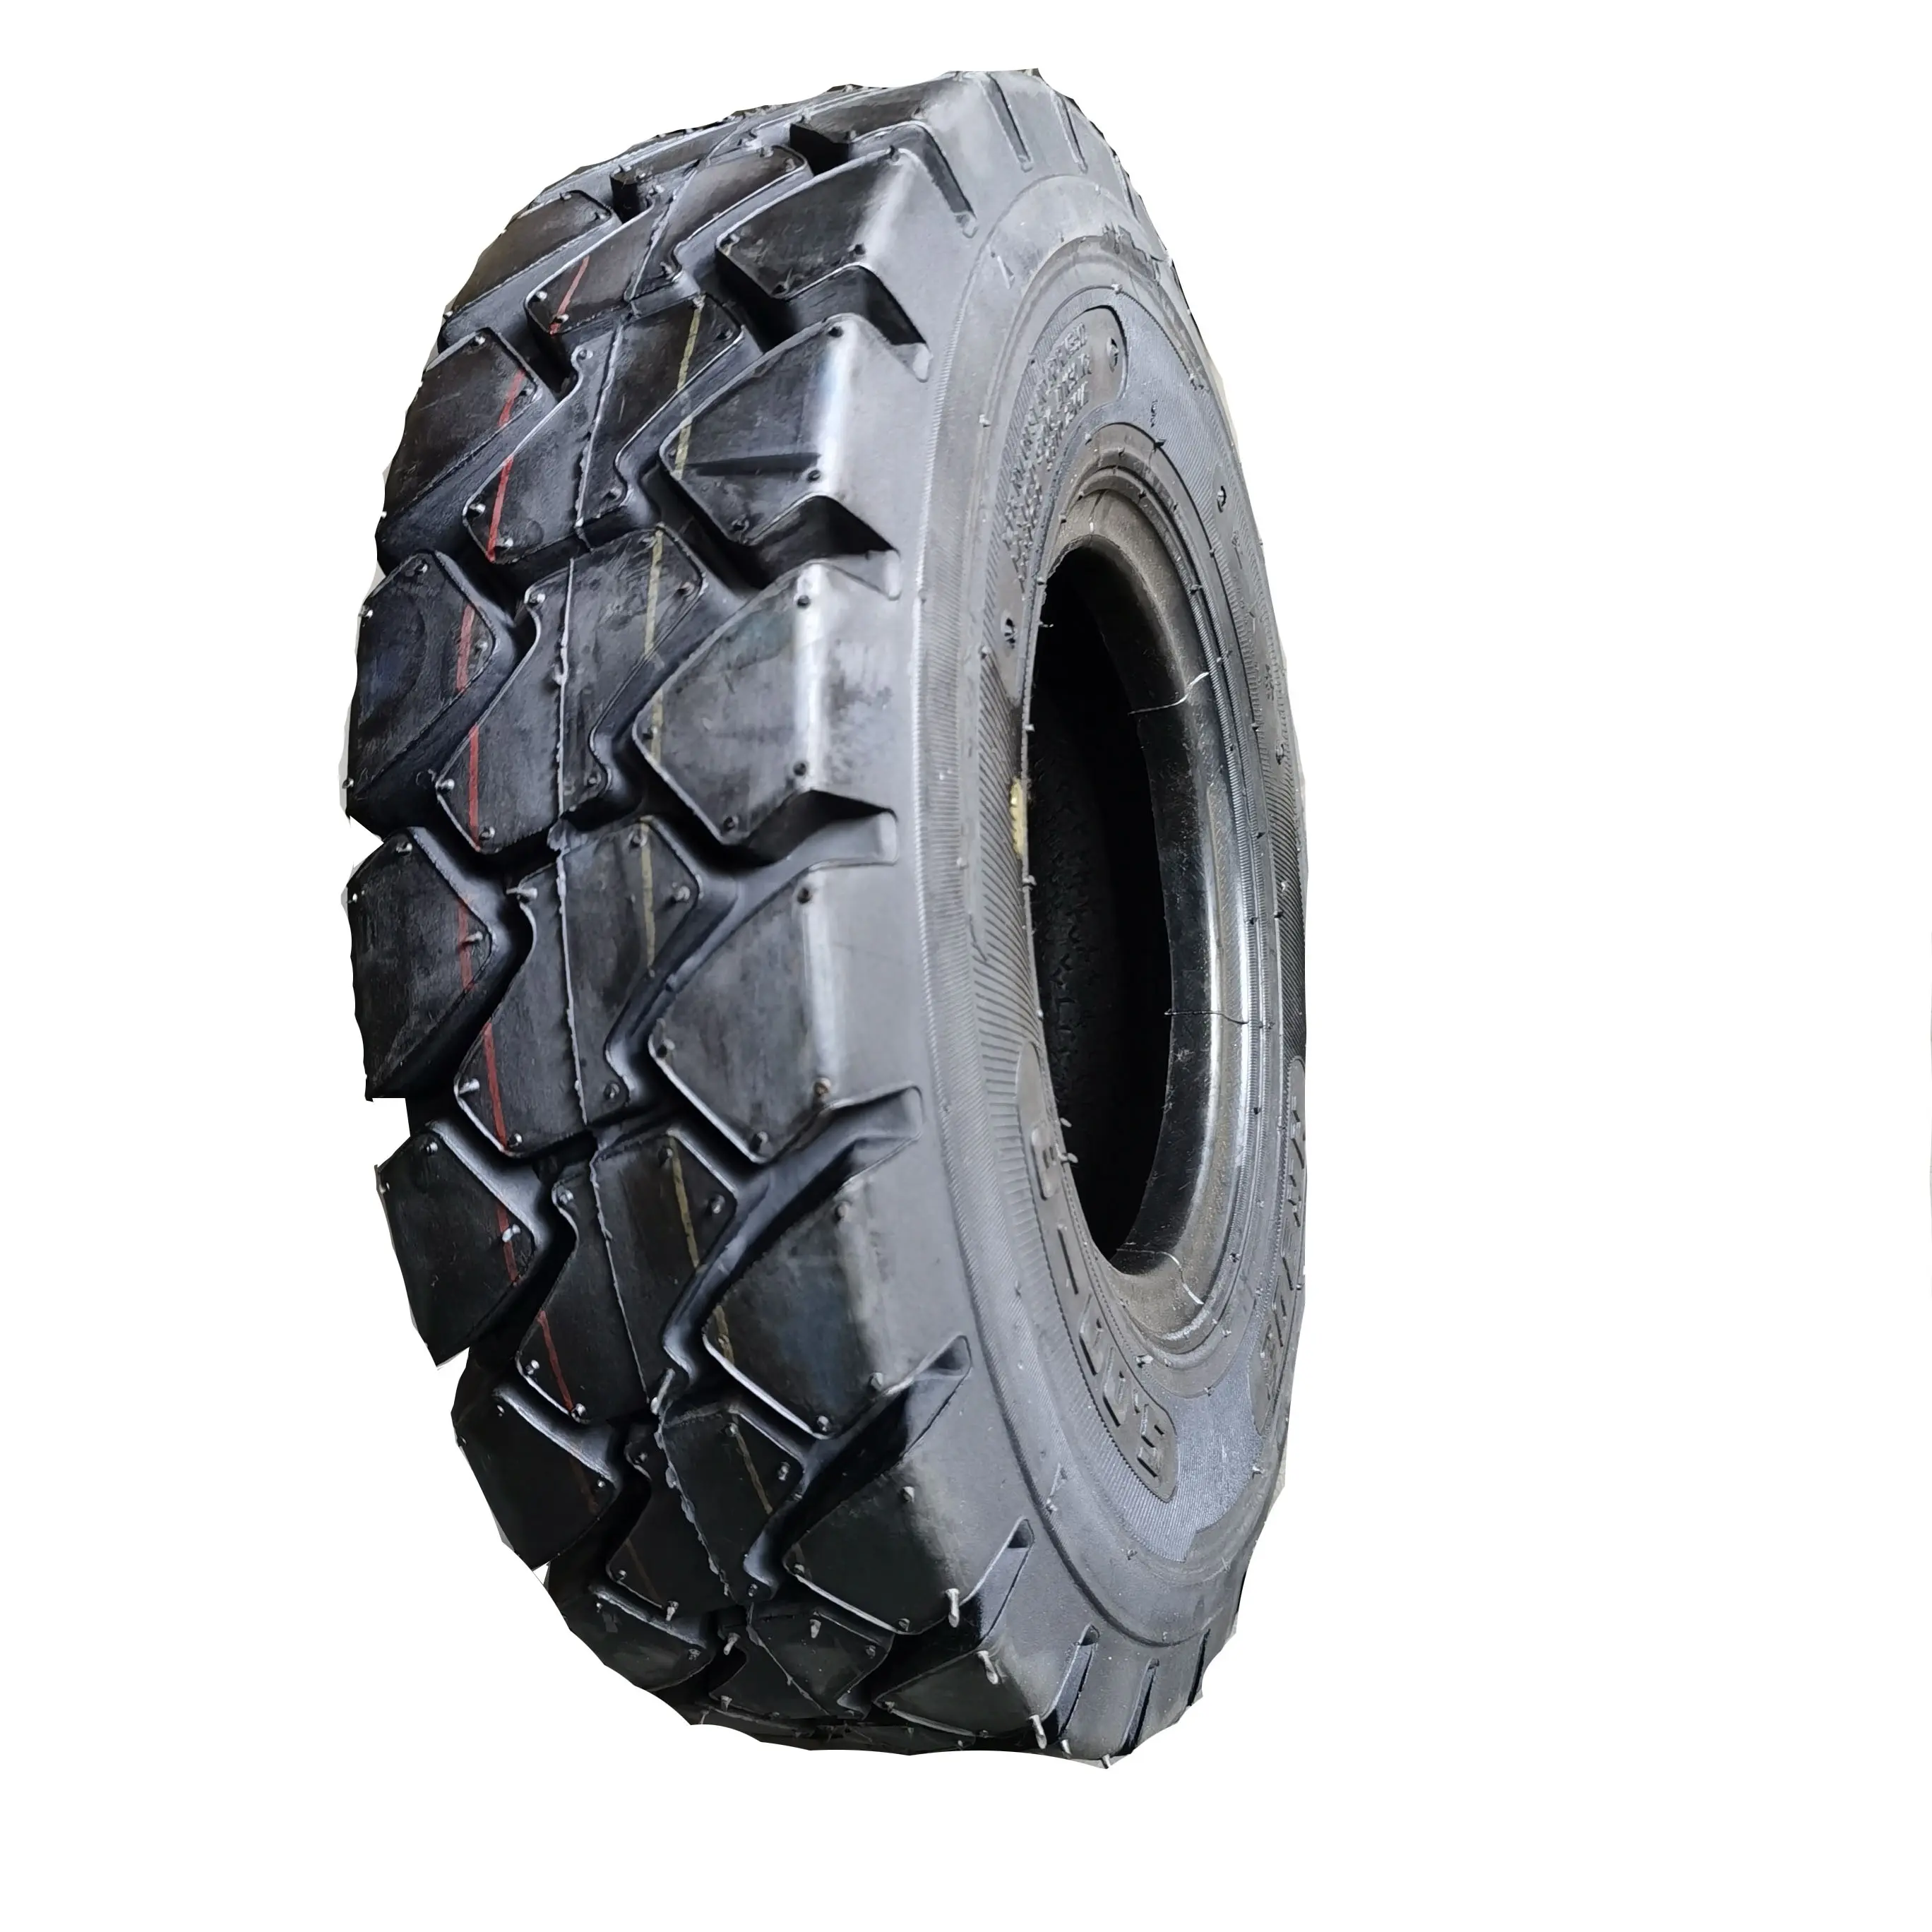 Neumático de nailon para camión, tubo interno, oferta china, 5,00-8 OTR, buena calidad y el mejor precio